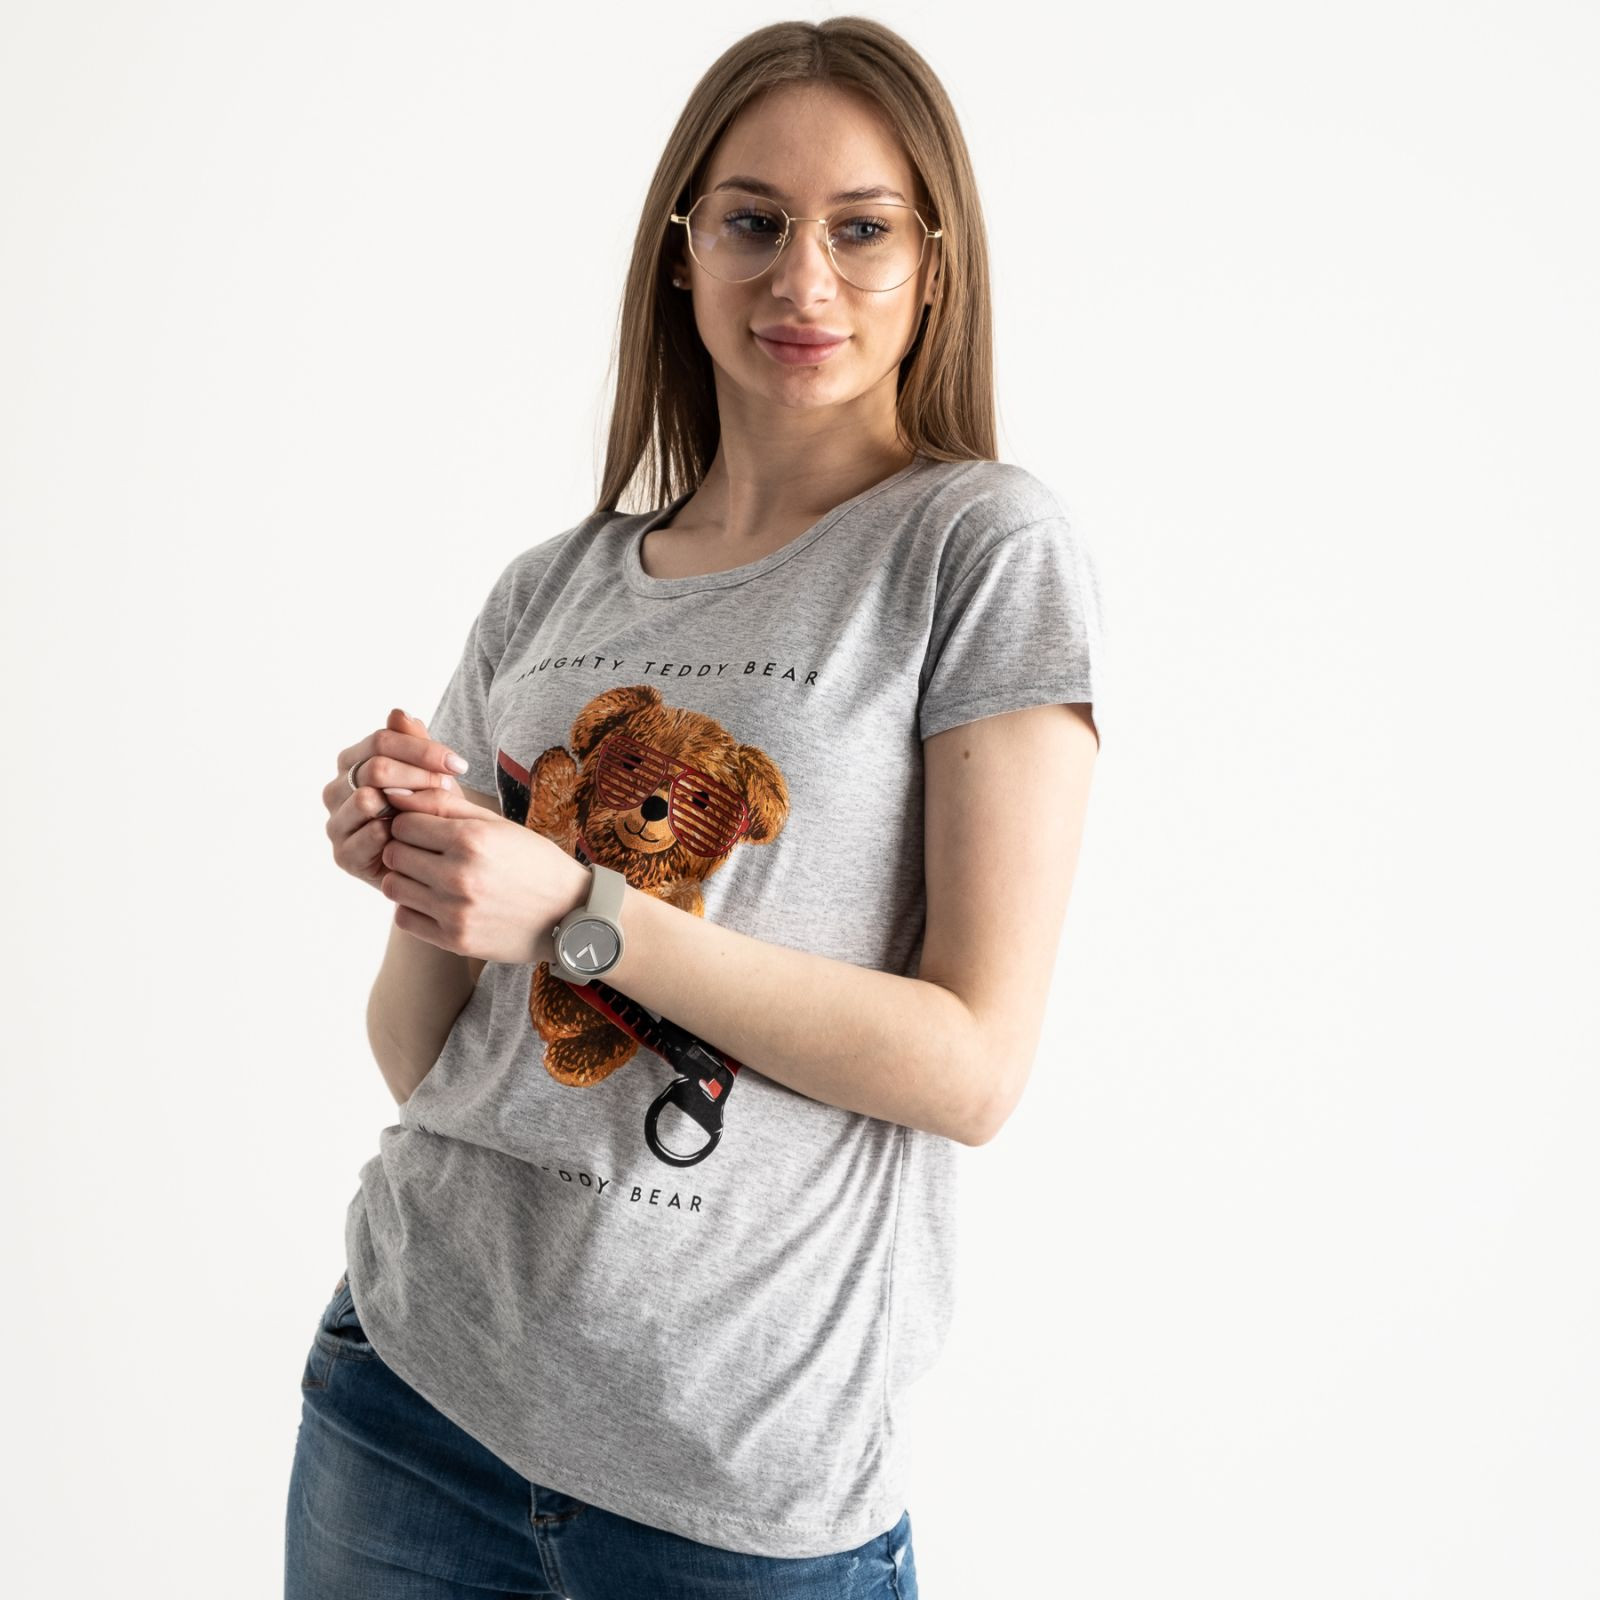 2570-5 серая футболка женская с принтом (3 ед. размеры: S.M.L)